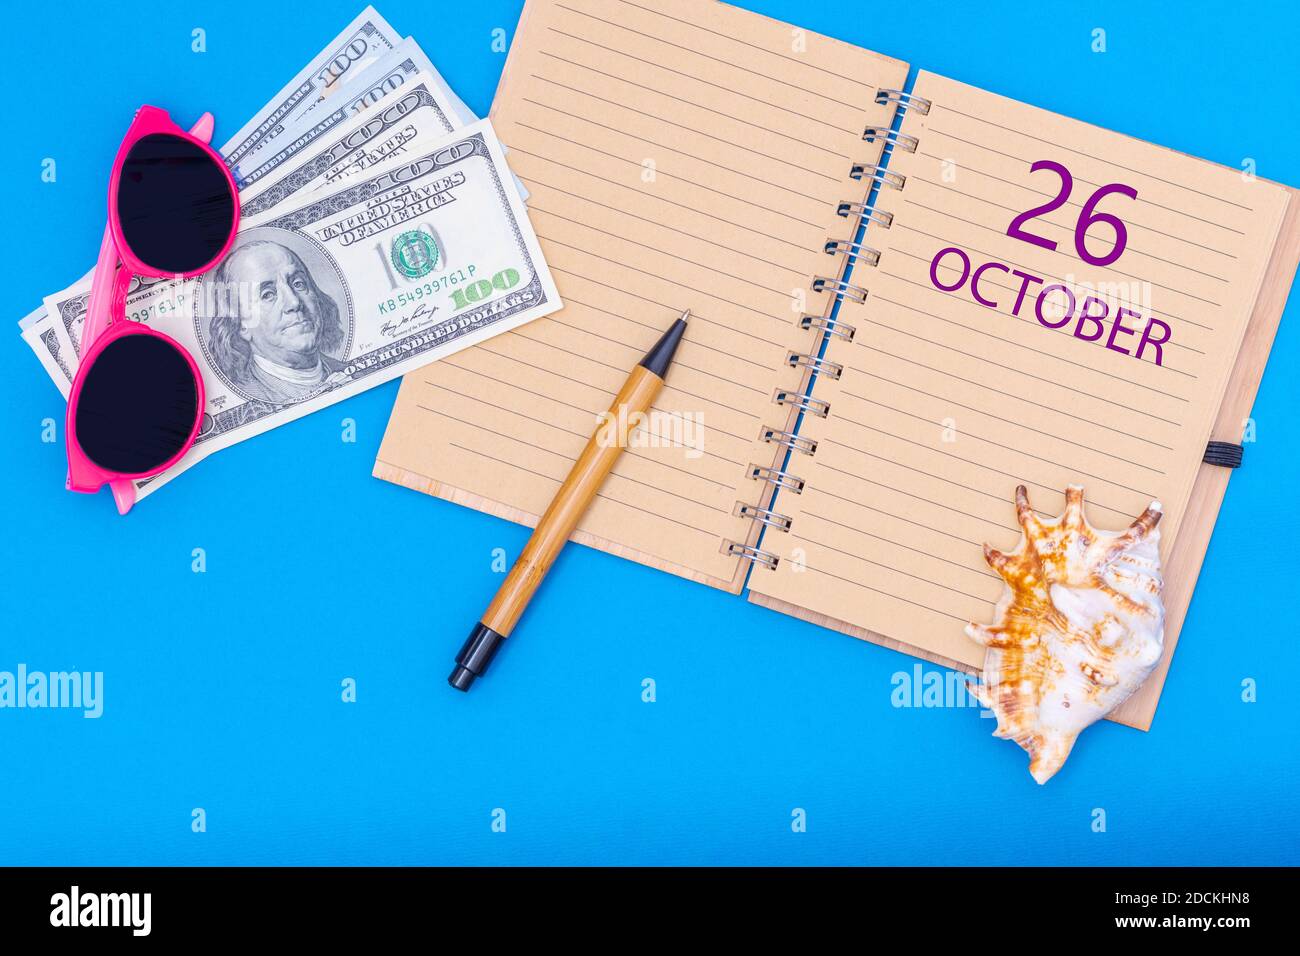 Der 26. Oktober. Oktober. Reiseplan flaches Design mit Notizblock Schreibdatum, Stift, Brille, Gelddollar und Muschel auf blauem Hintergrund. Aut Stockfoto